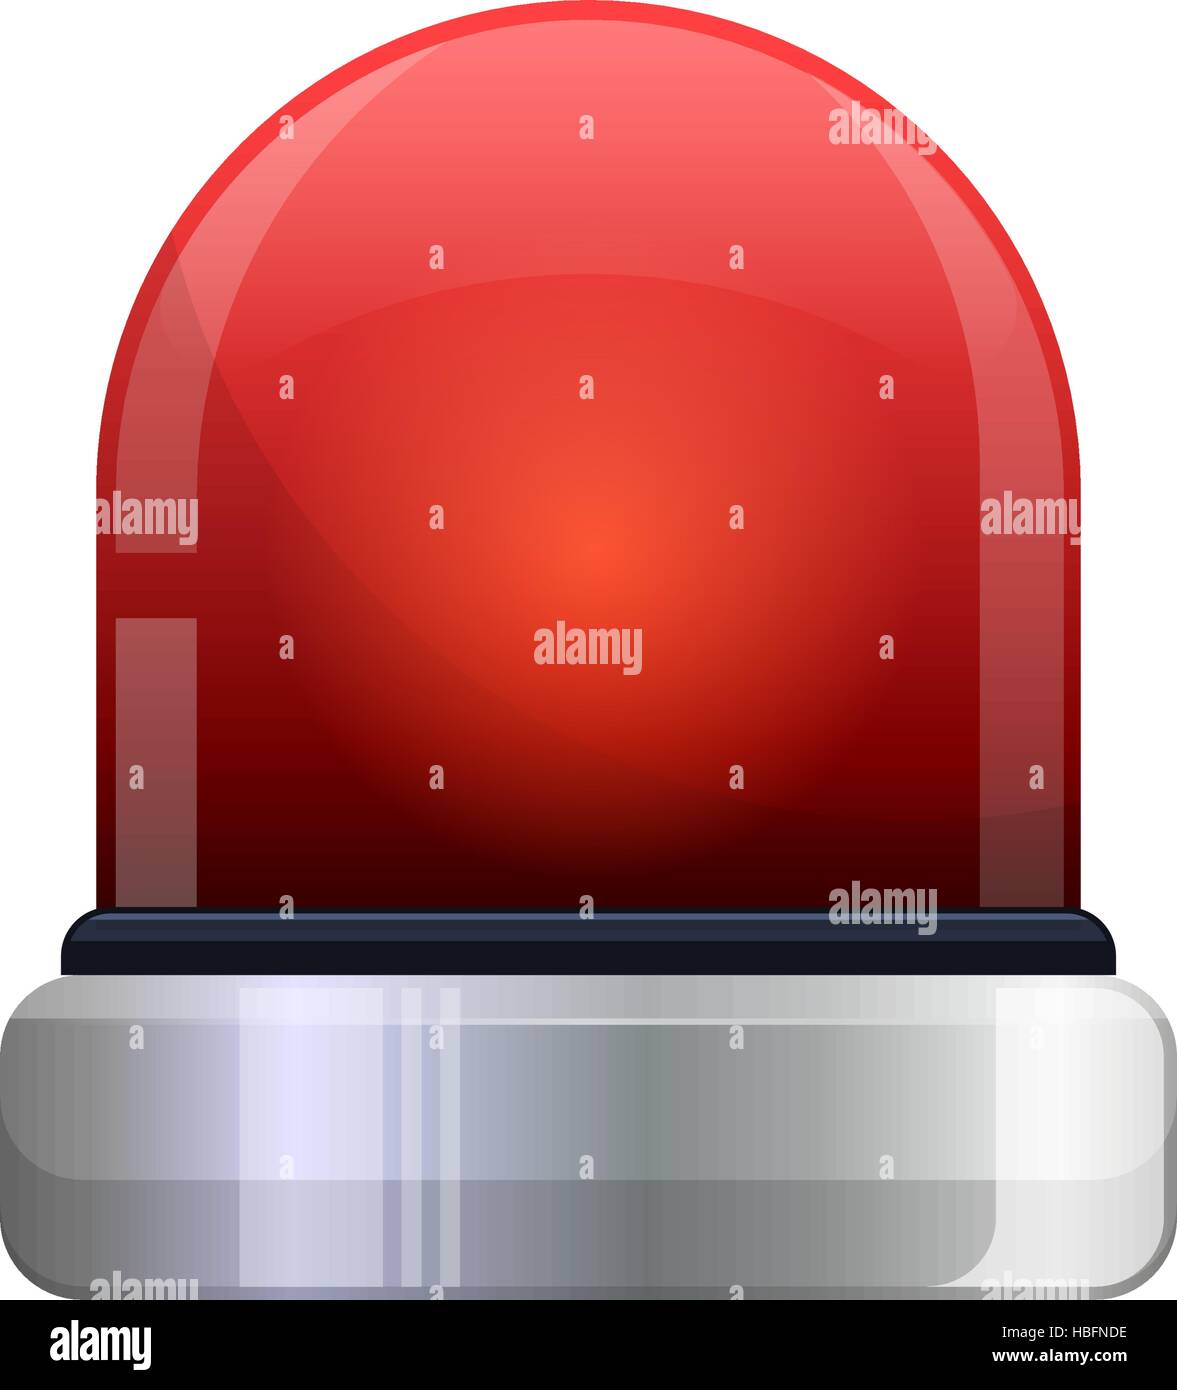 Vektor-Illustration von rot blinkenden Notlicht Stock Vektor